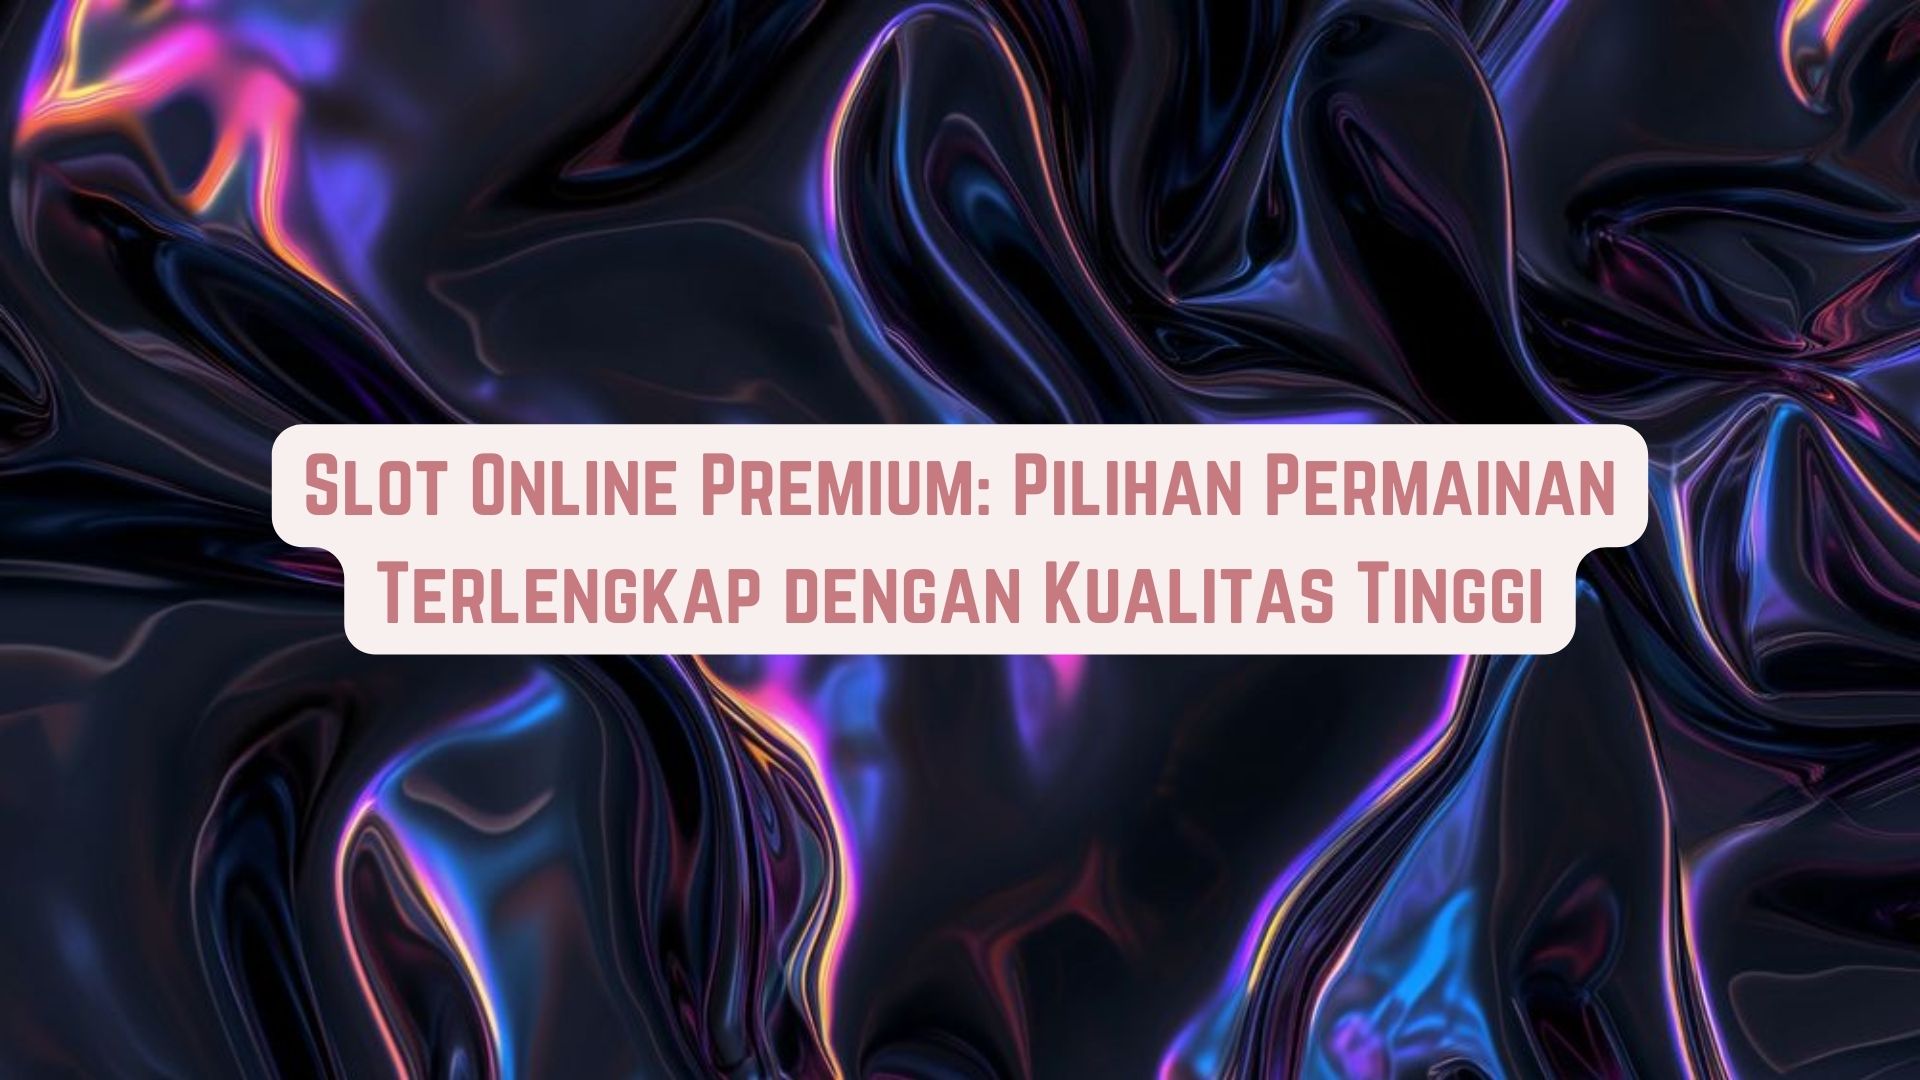 Game Online Premium: Pilihan Terlengkap Kualitas Tinggi